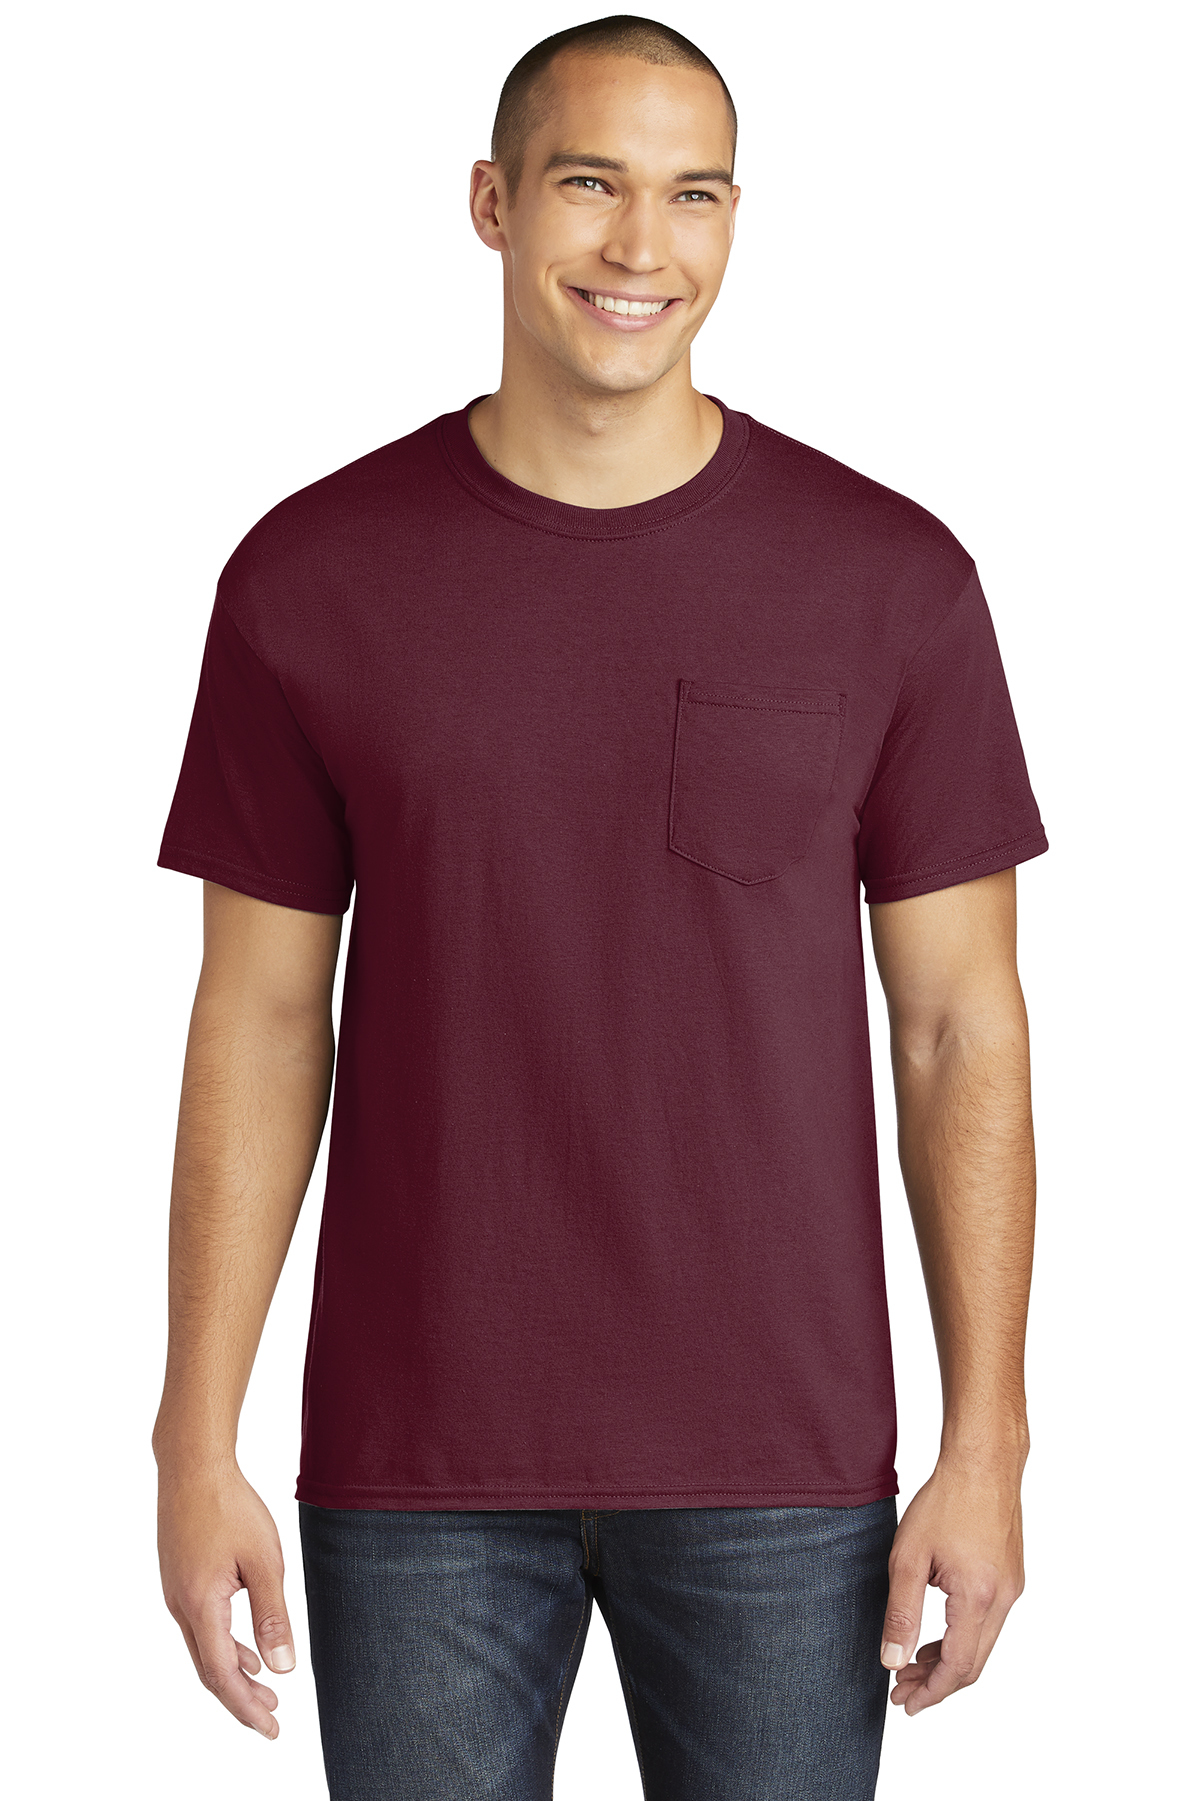 Gildan Heavy Cotton 100% Cotton Pocket T-Shirt | Product | Online ...